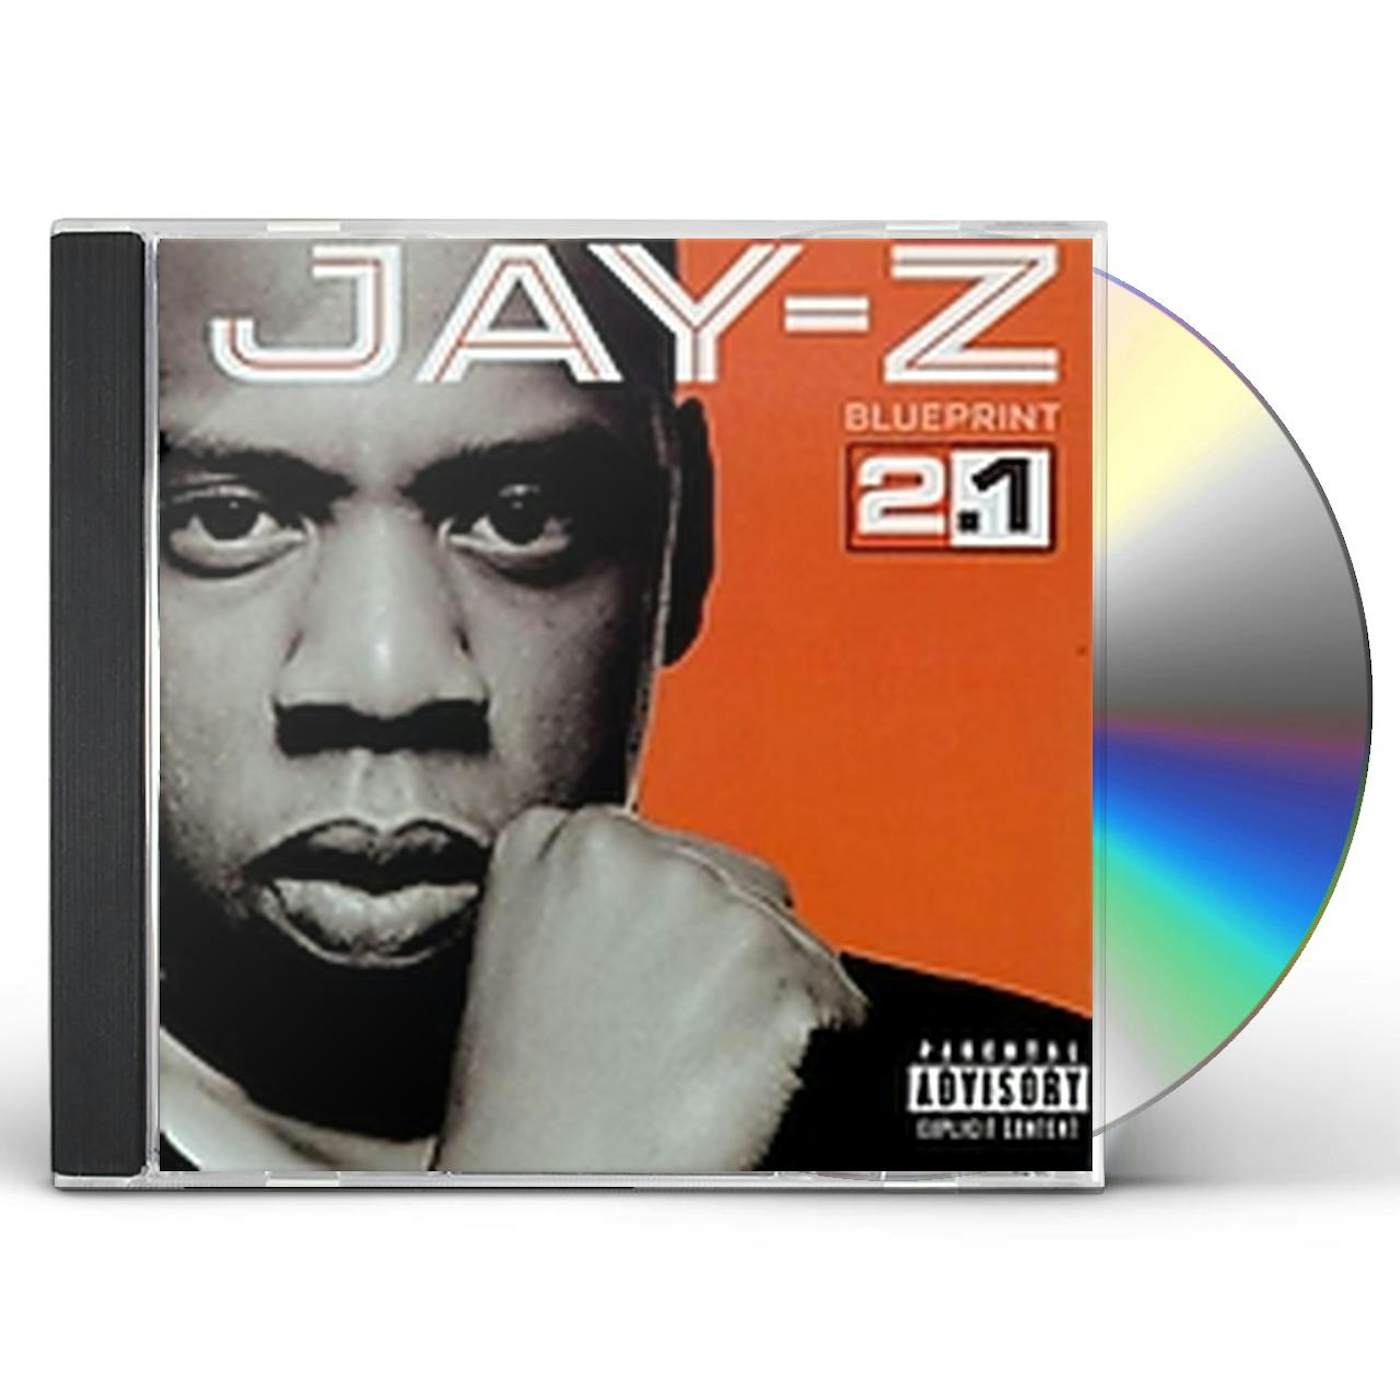 JAY-Z BLUEPRINT 2.1 CD